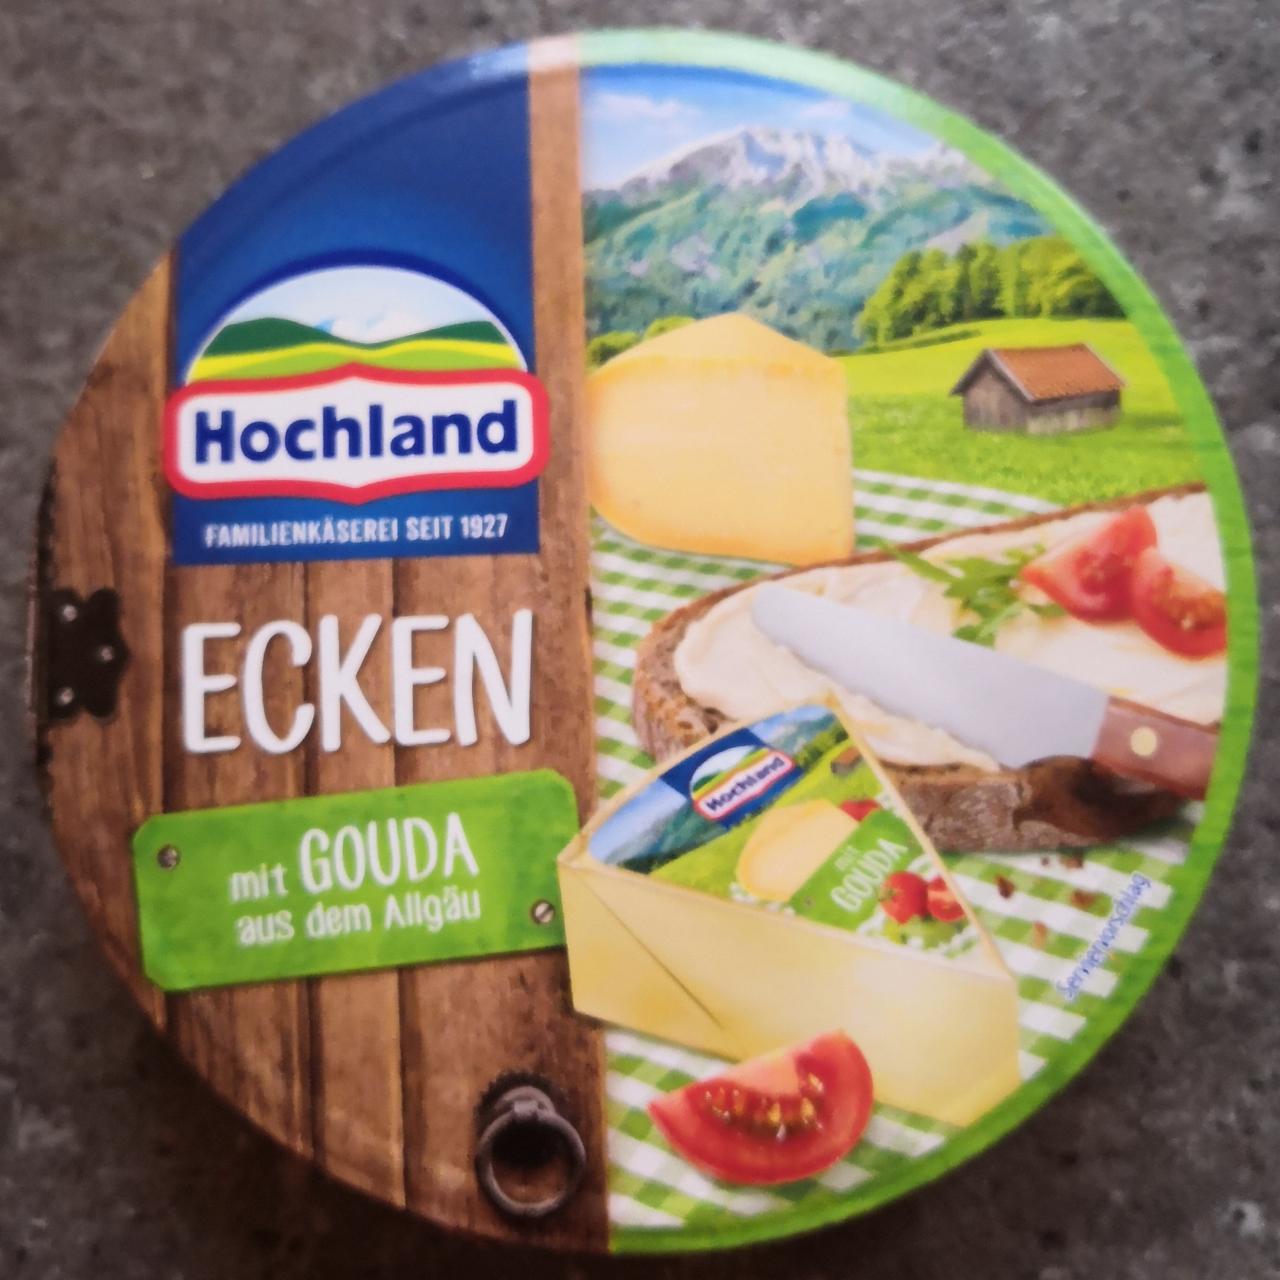 Fotografie - Ecken mit gouda aus dem Allgäu Hochland